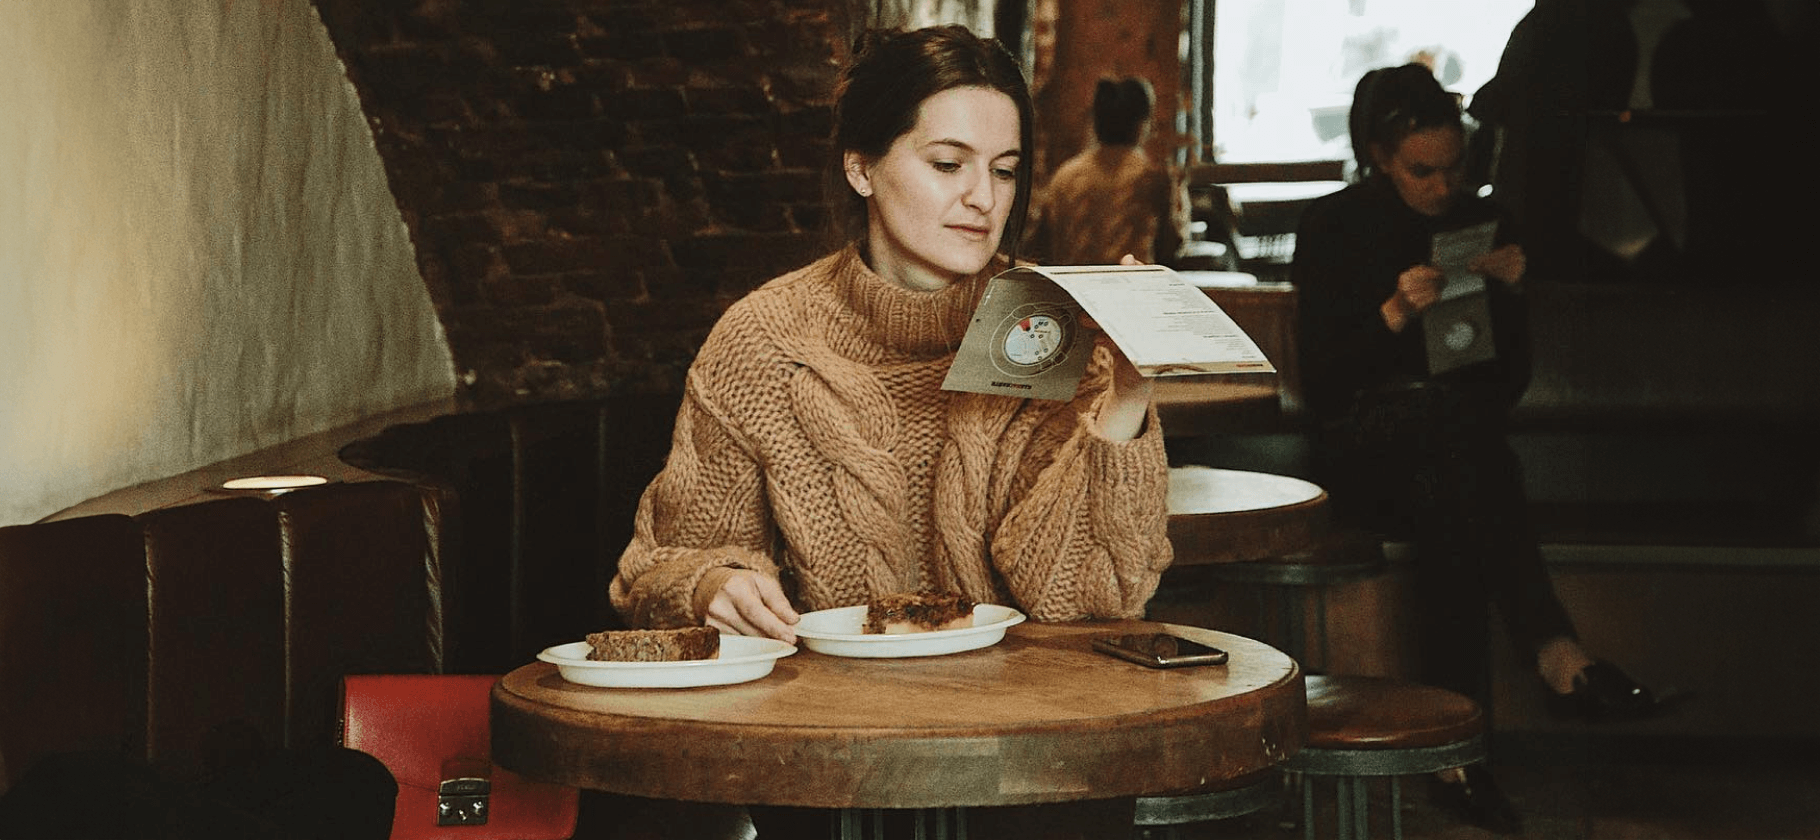 Идеально для интровертов: 10 кафе в Москве, где уютно и спокойно